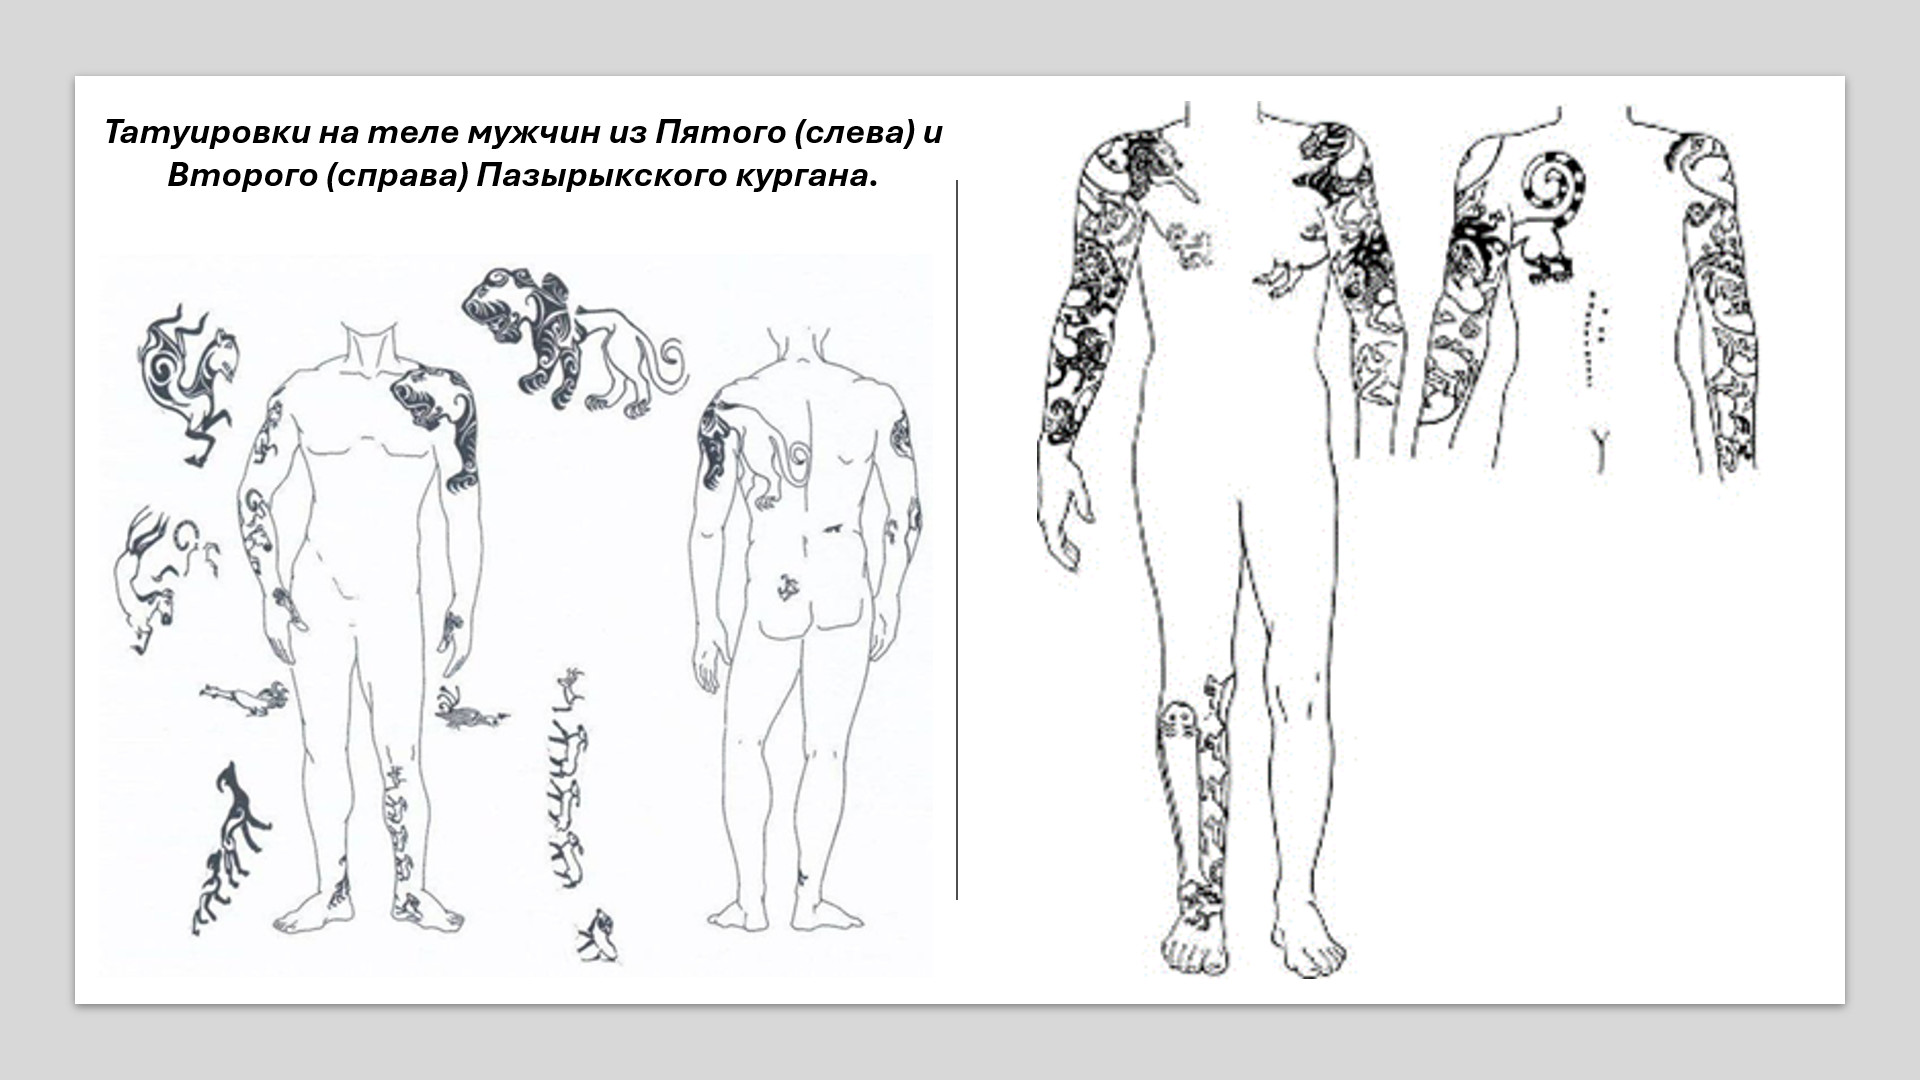 Татуировки у скифских мумий. Культурный код - татуировки, Пазырык, мумии, курганы, скифы